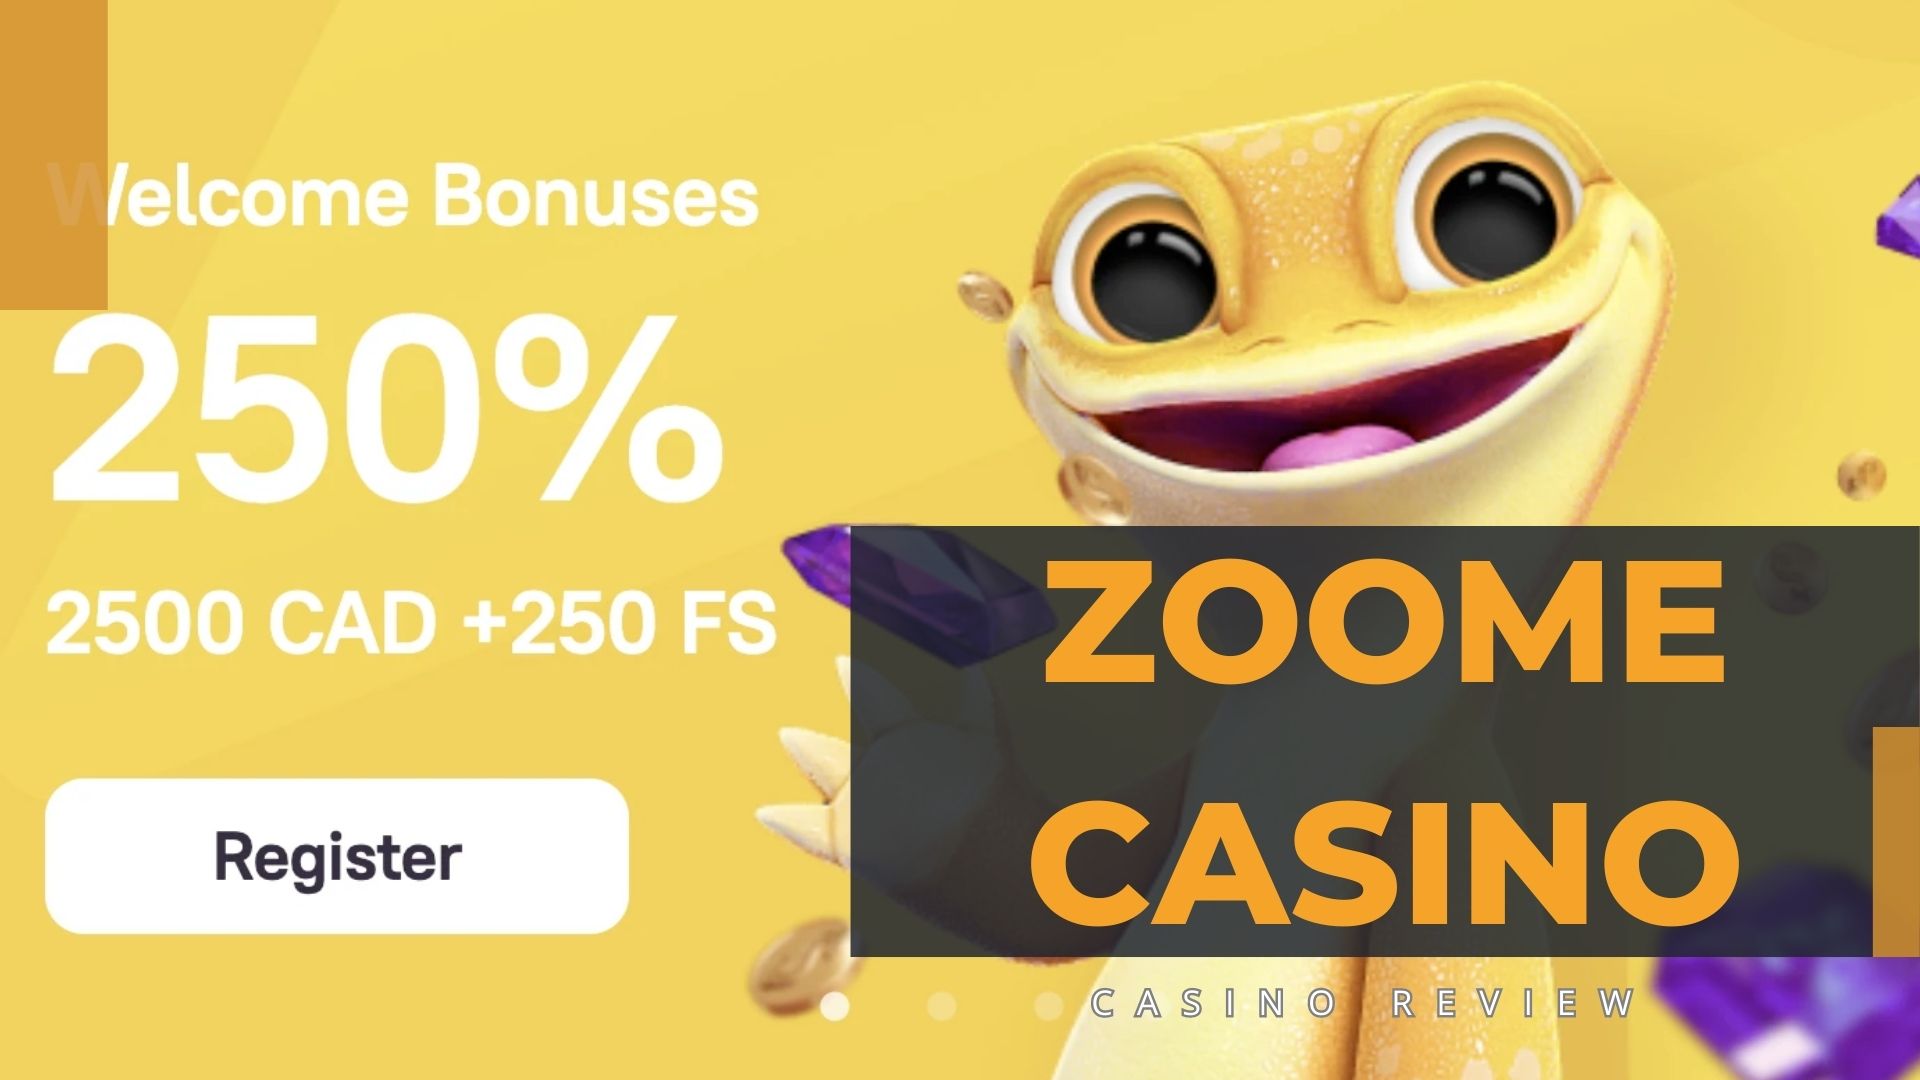 Zoome Casino In Canada